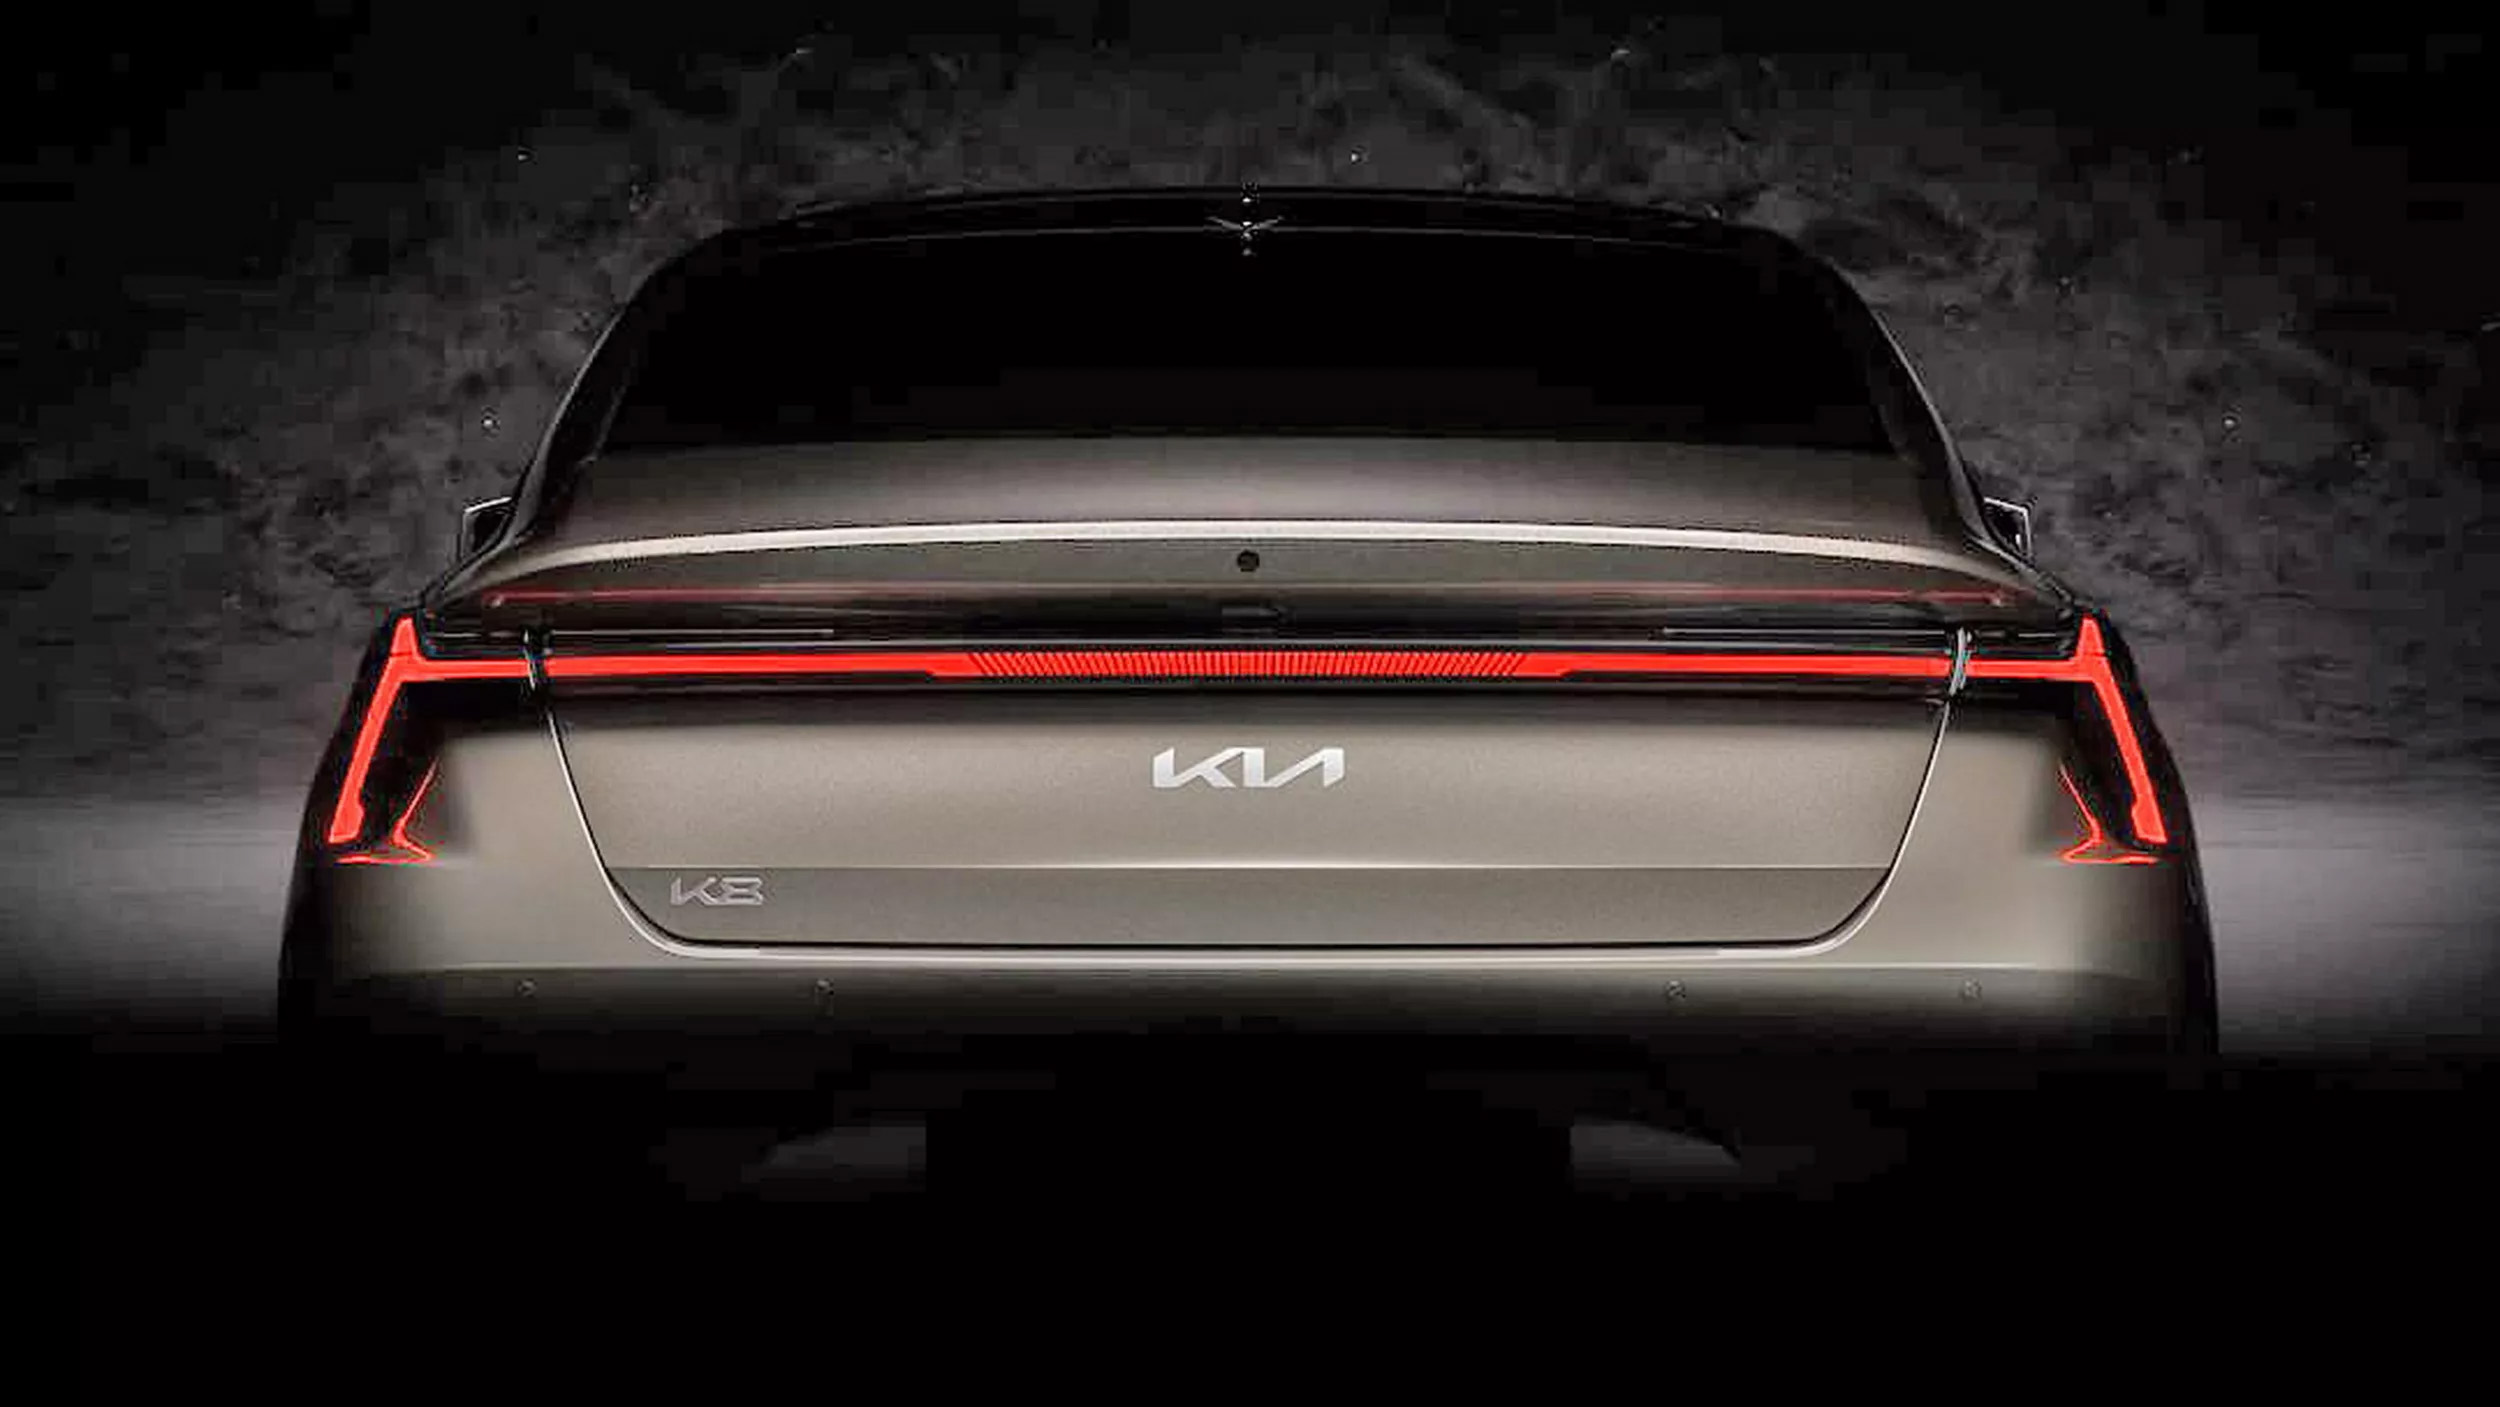 Kомпания Kia раскрыла внешний облик конкурента Toyota Camry